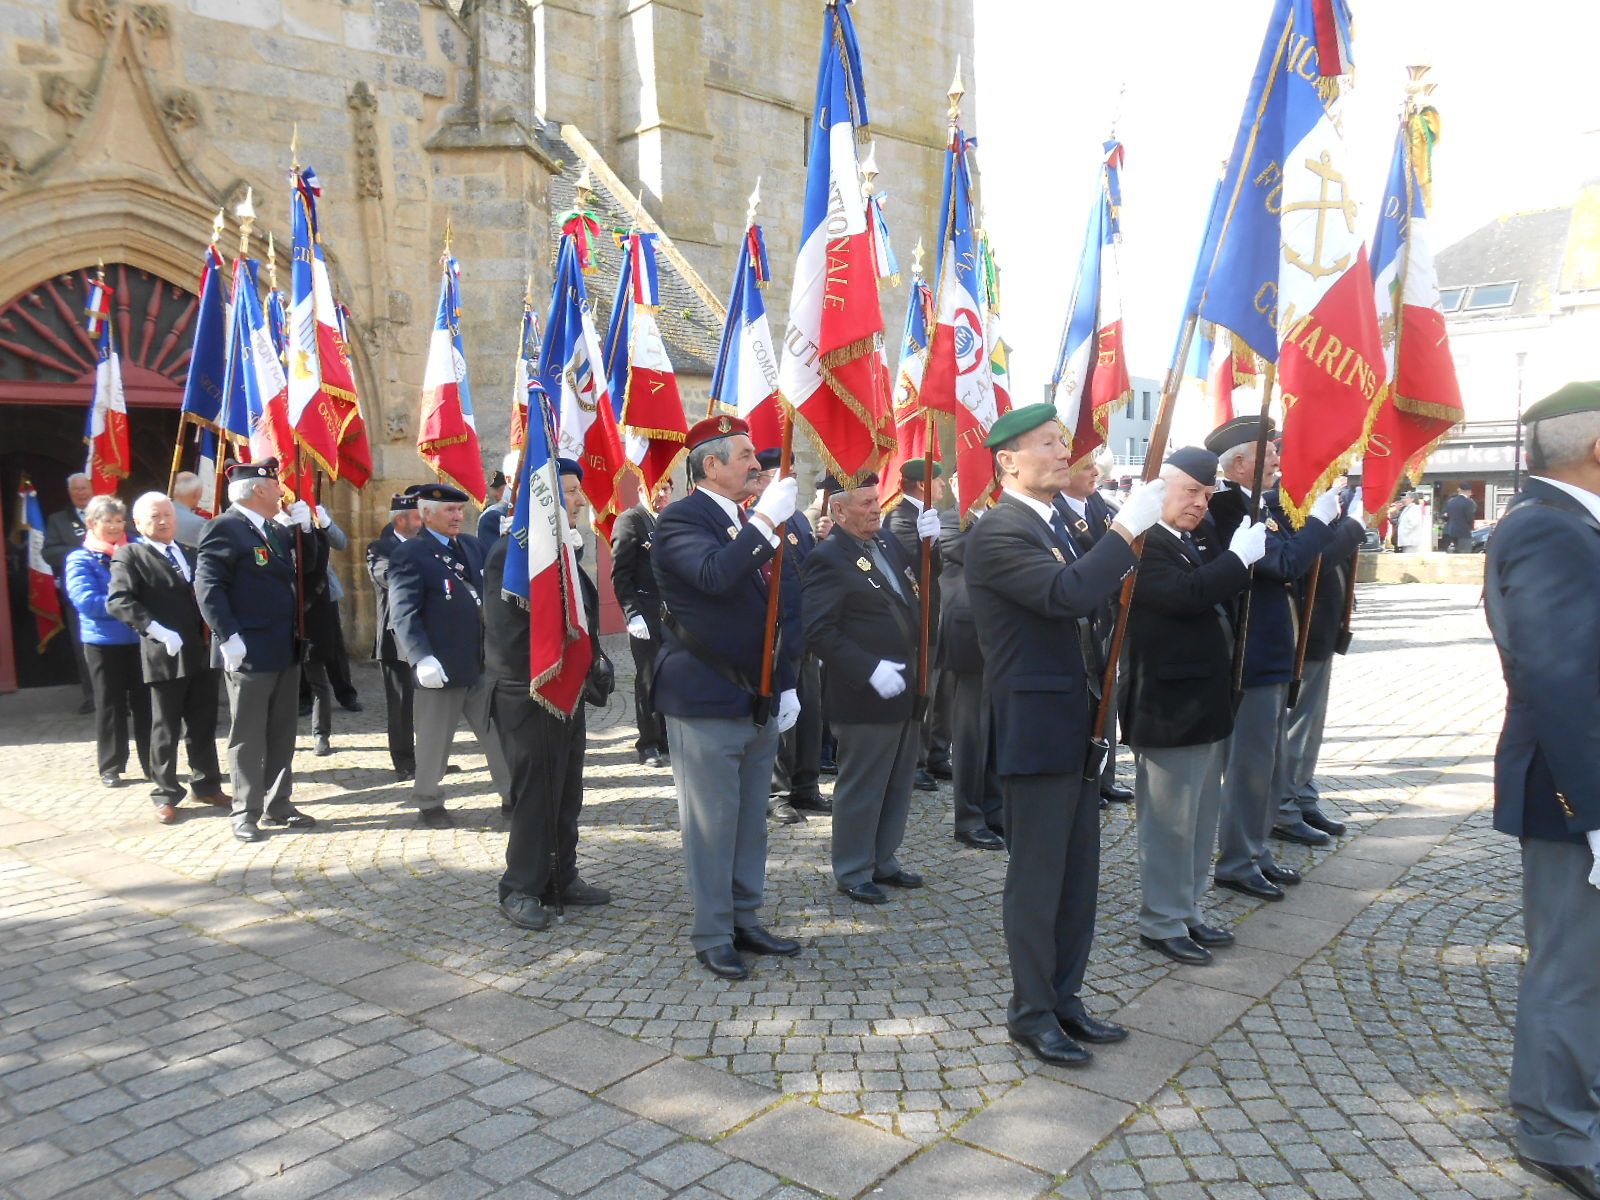 Déplacement vers le monument aux morts "Place du souvenir" accompagné de la musique des sapeurs-pompiers du Morbihan.